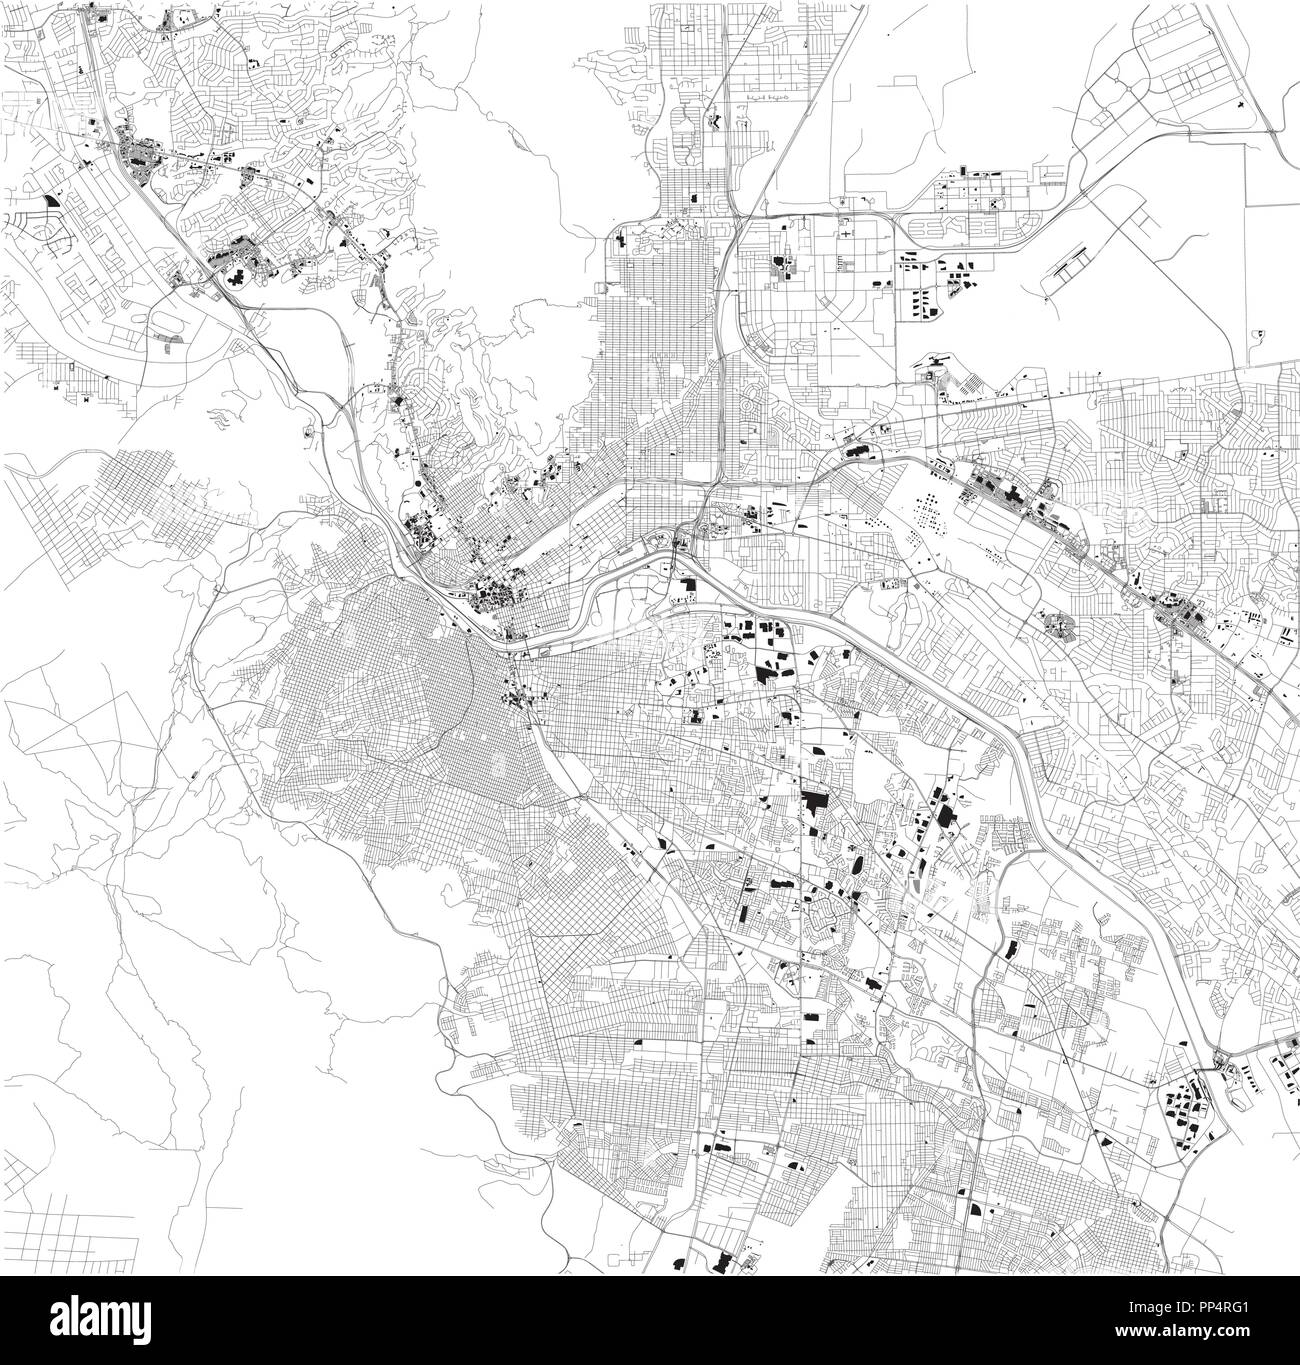 La carte d'El Paso, Ciudad Juarez, satellite, carte en noir et blanc. Annuaire de la rue et plan de la ville. Le Texas. United States Illustration de Vecteur